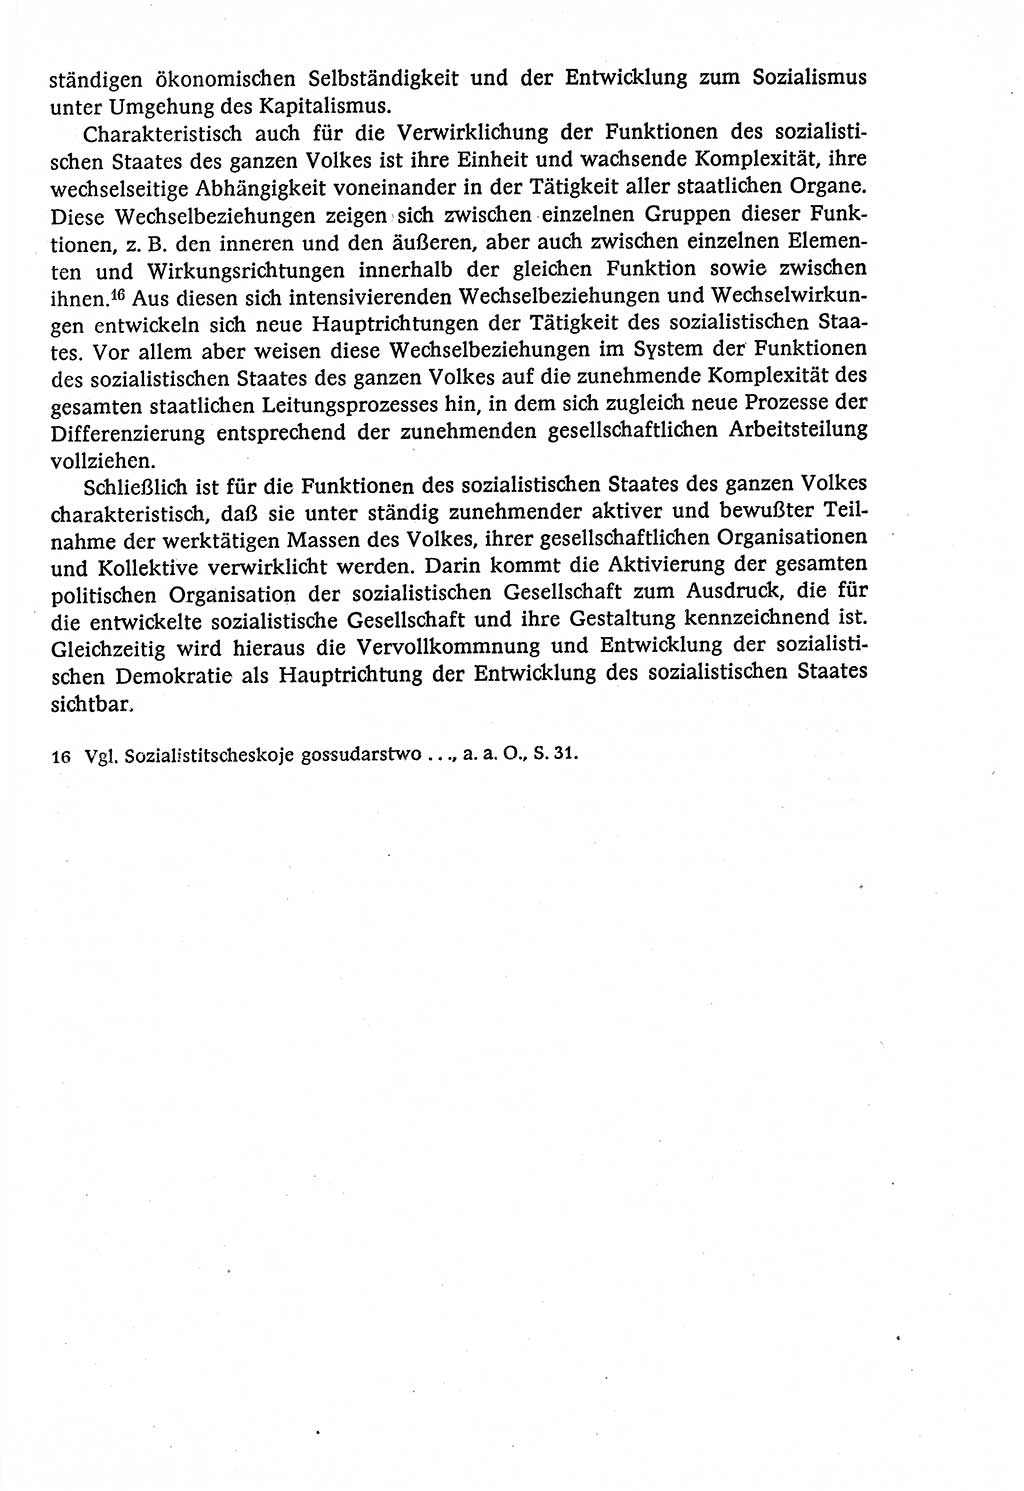 Marxistisch-leninistische (ML) Staats- und Rechtstheorie [Deutsche Demokratische Republik (DDR)], Lehrbuch 1980, Seite 329 (ML St.-R.-Th. DDR Lb. 1980, S. 329)